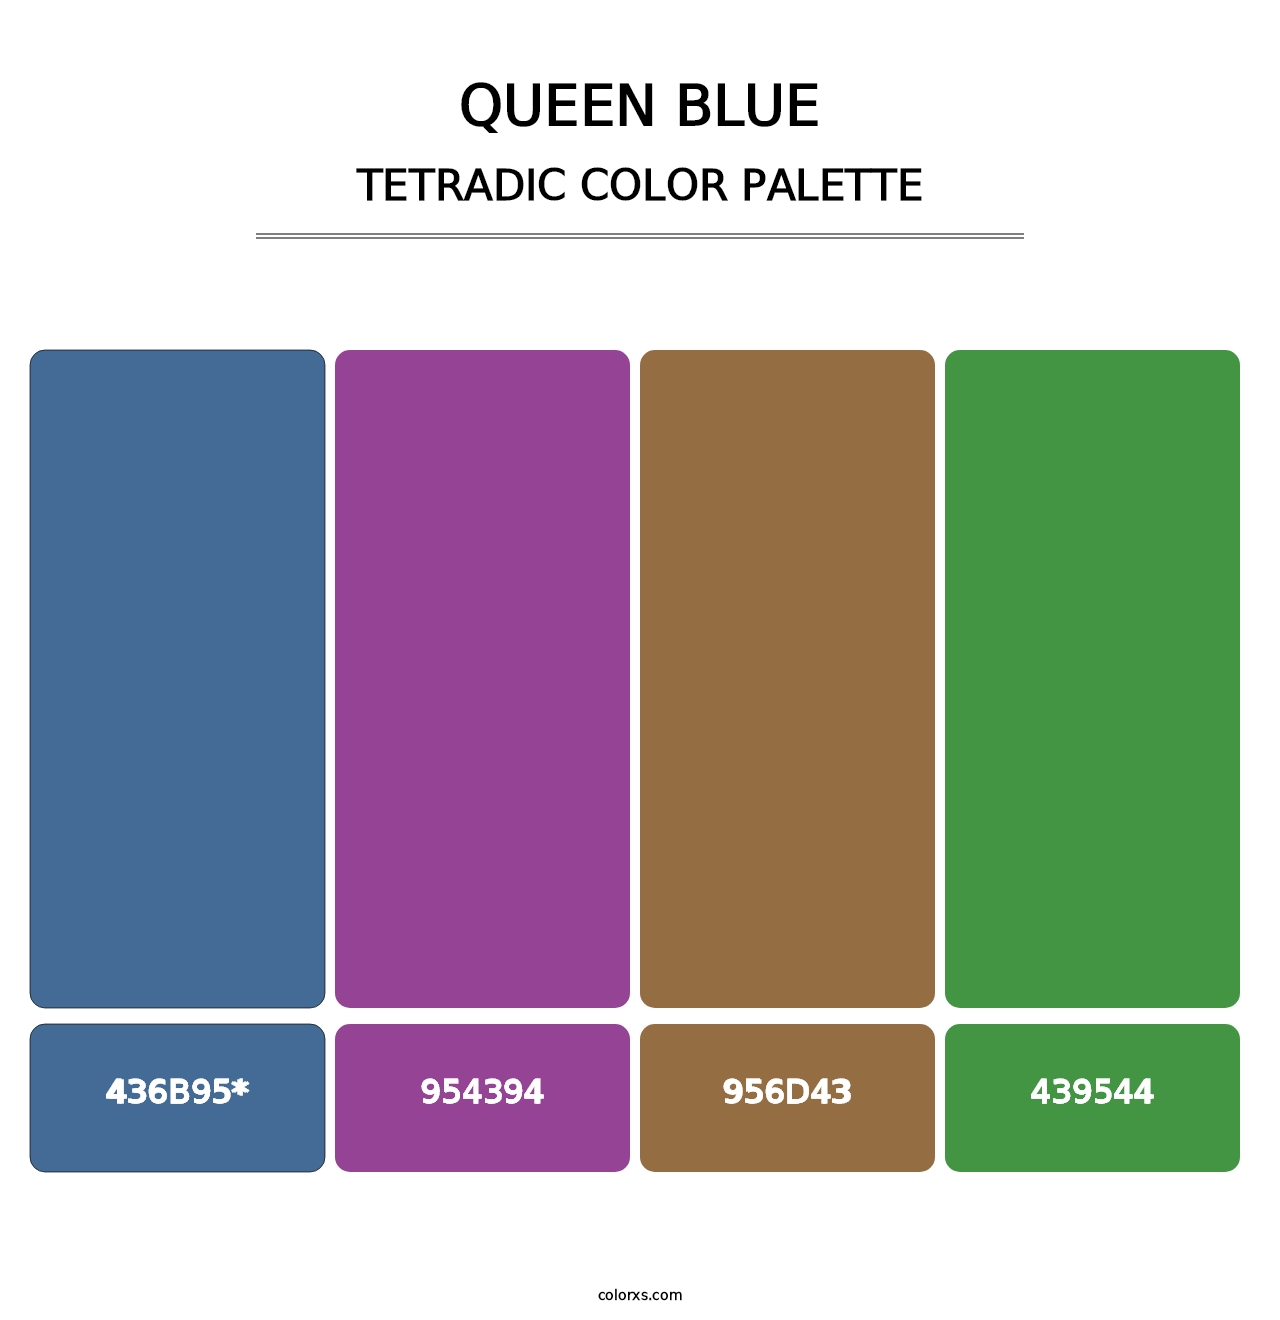 Queen Blue - Tetradic Color Palette